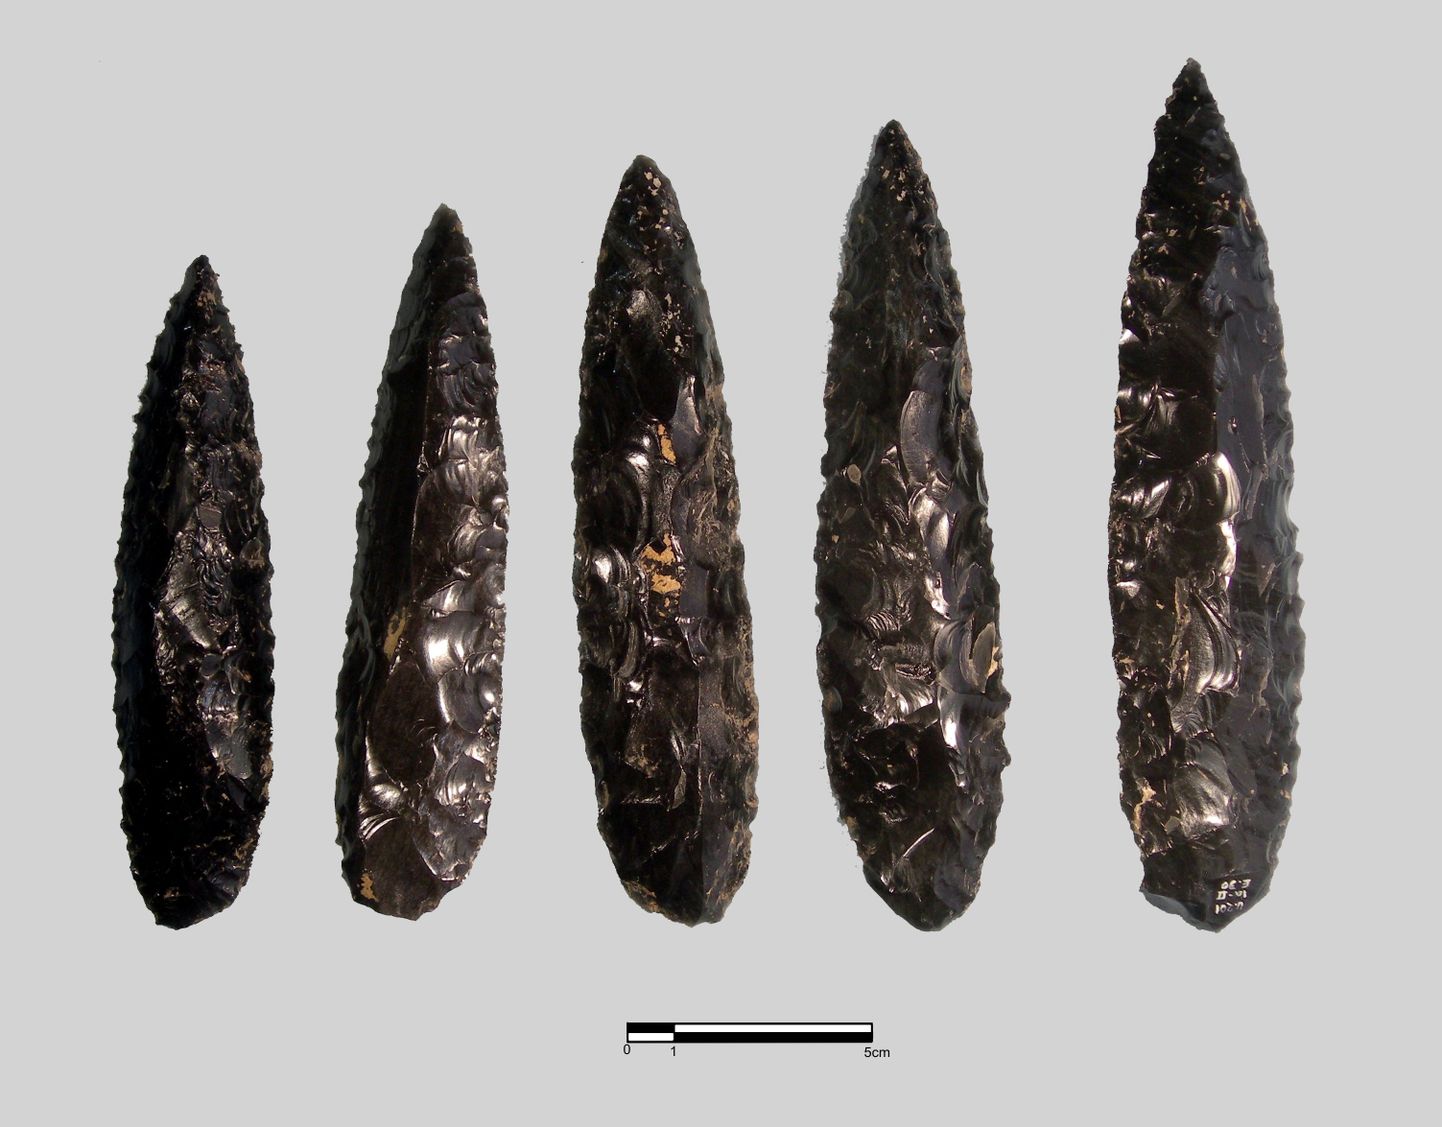 Cantonast leitud obsidiaanist noad